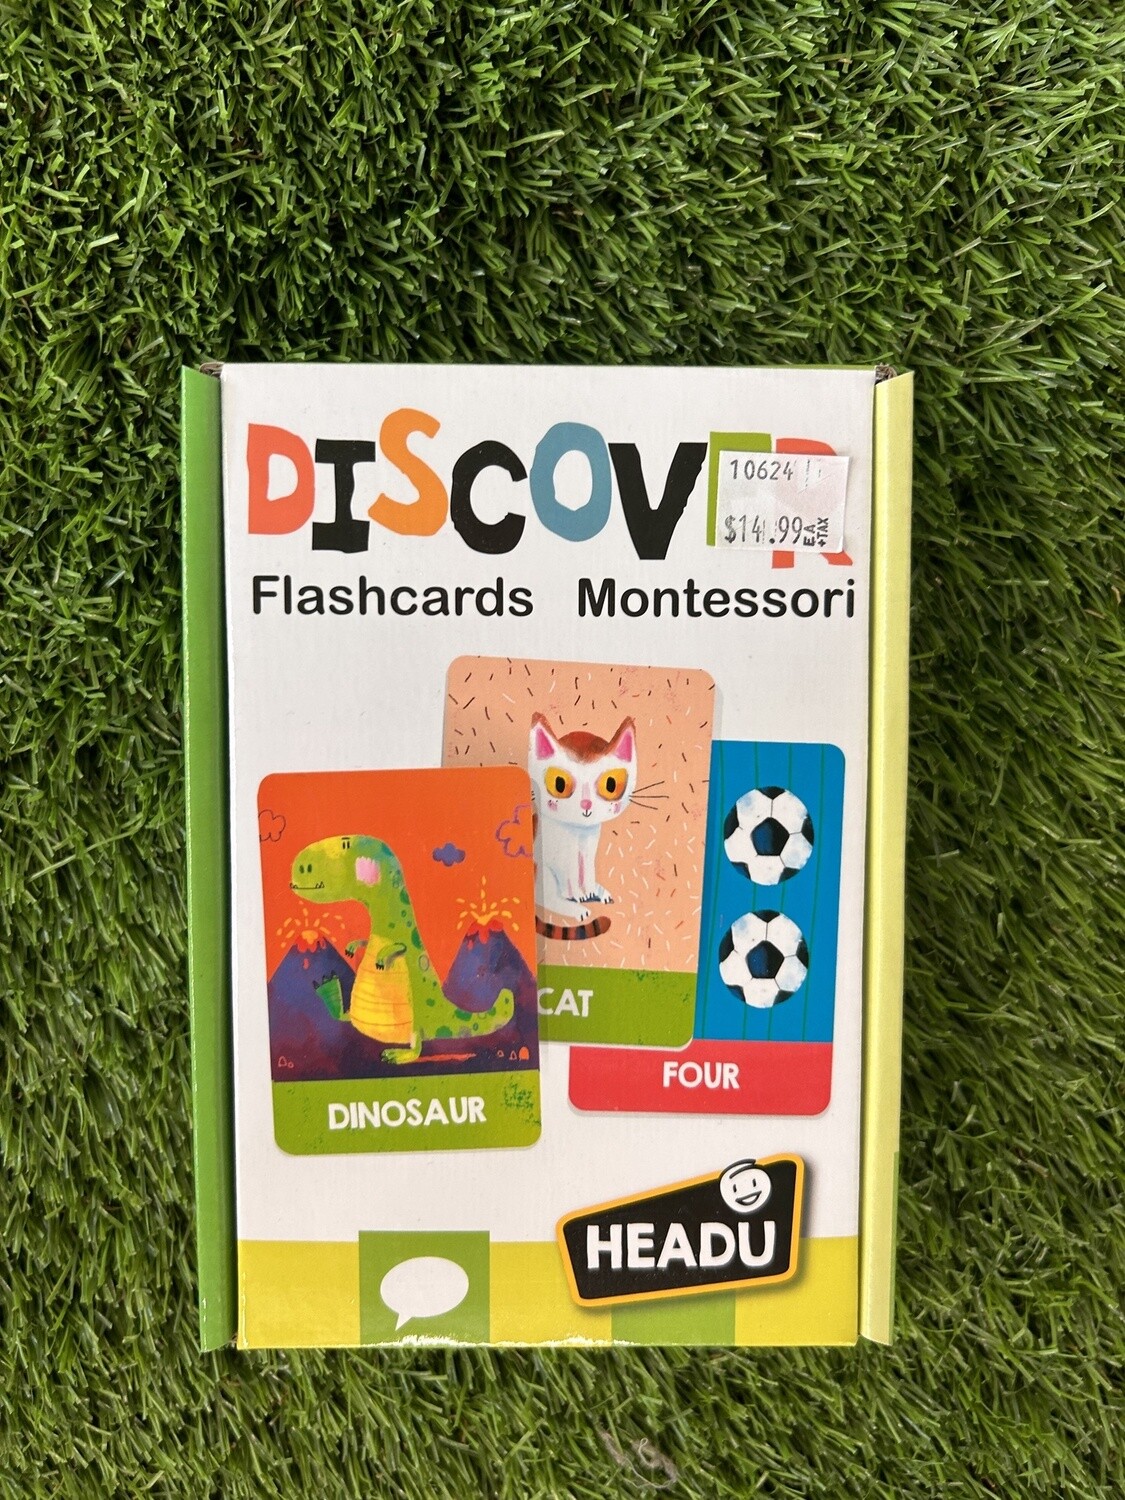 Discover Flashcards Montessori